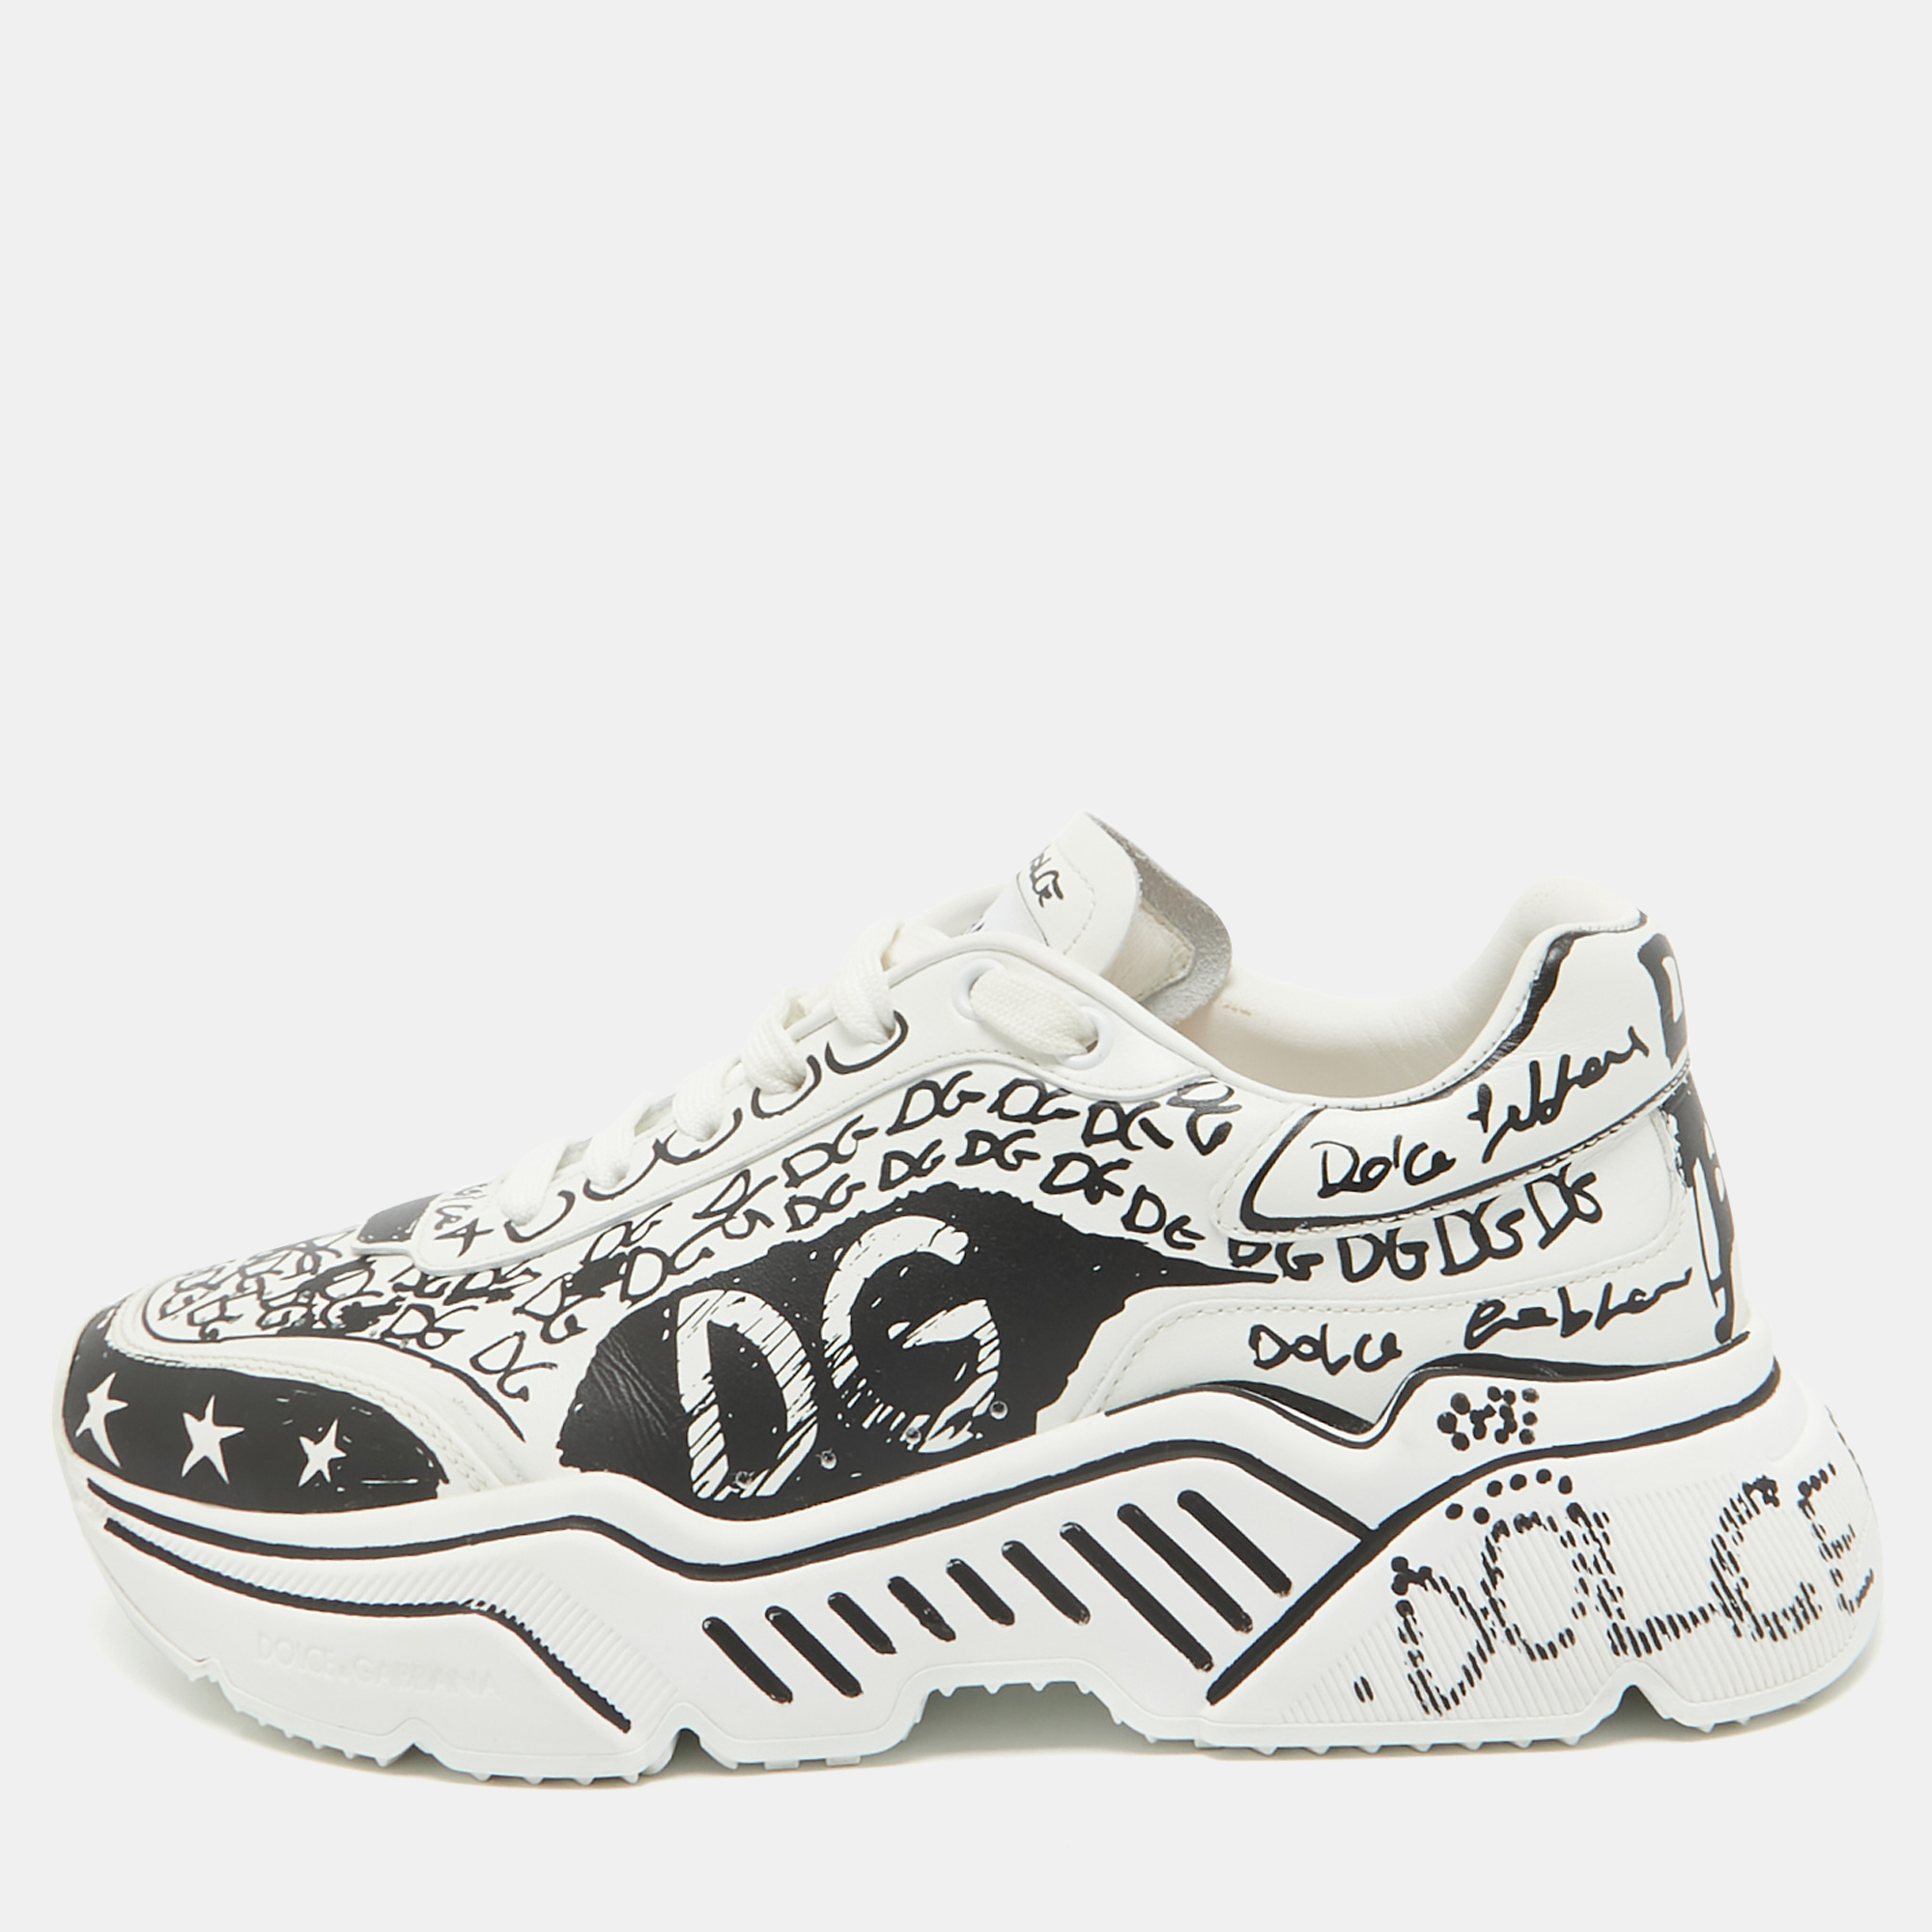 Dolce & gabbana black/white graffiti logo low top sneakers size 40.5